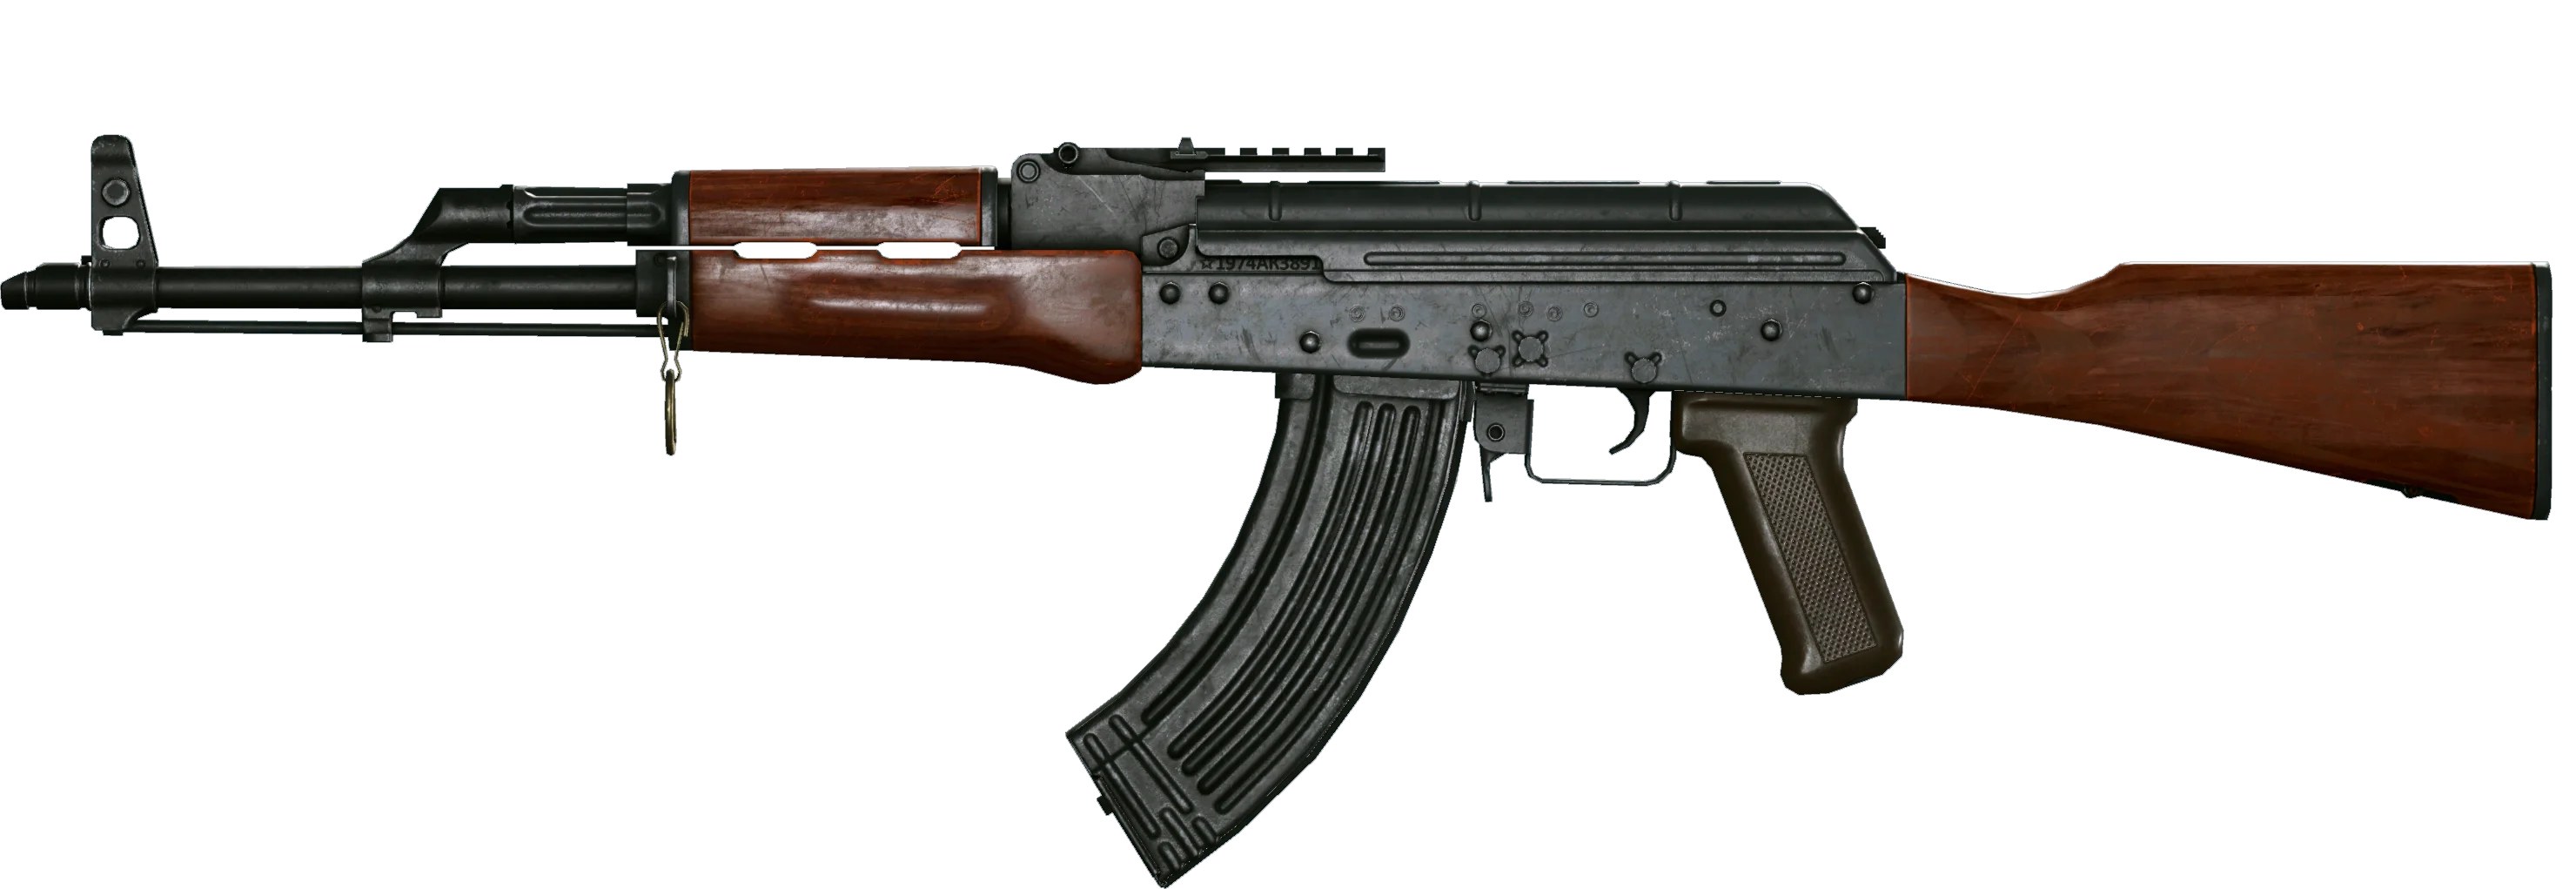 AK в Warface — почему так популярен и как его получить - фото 2